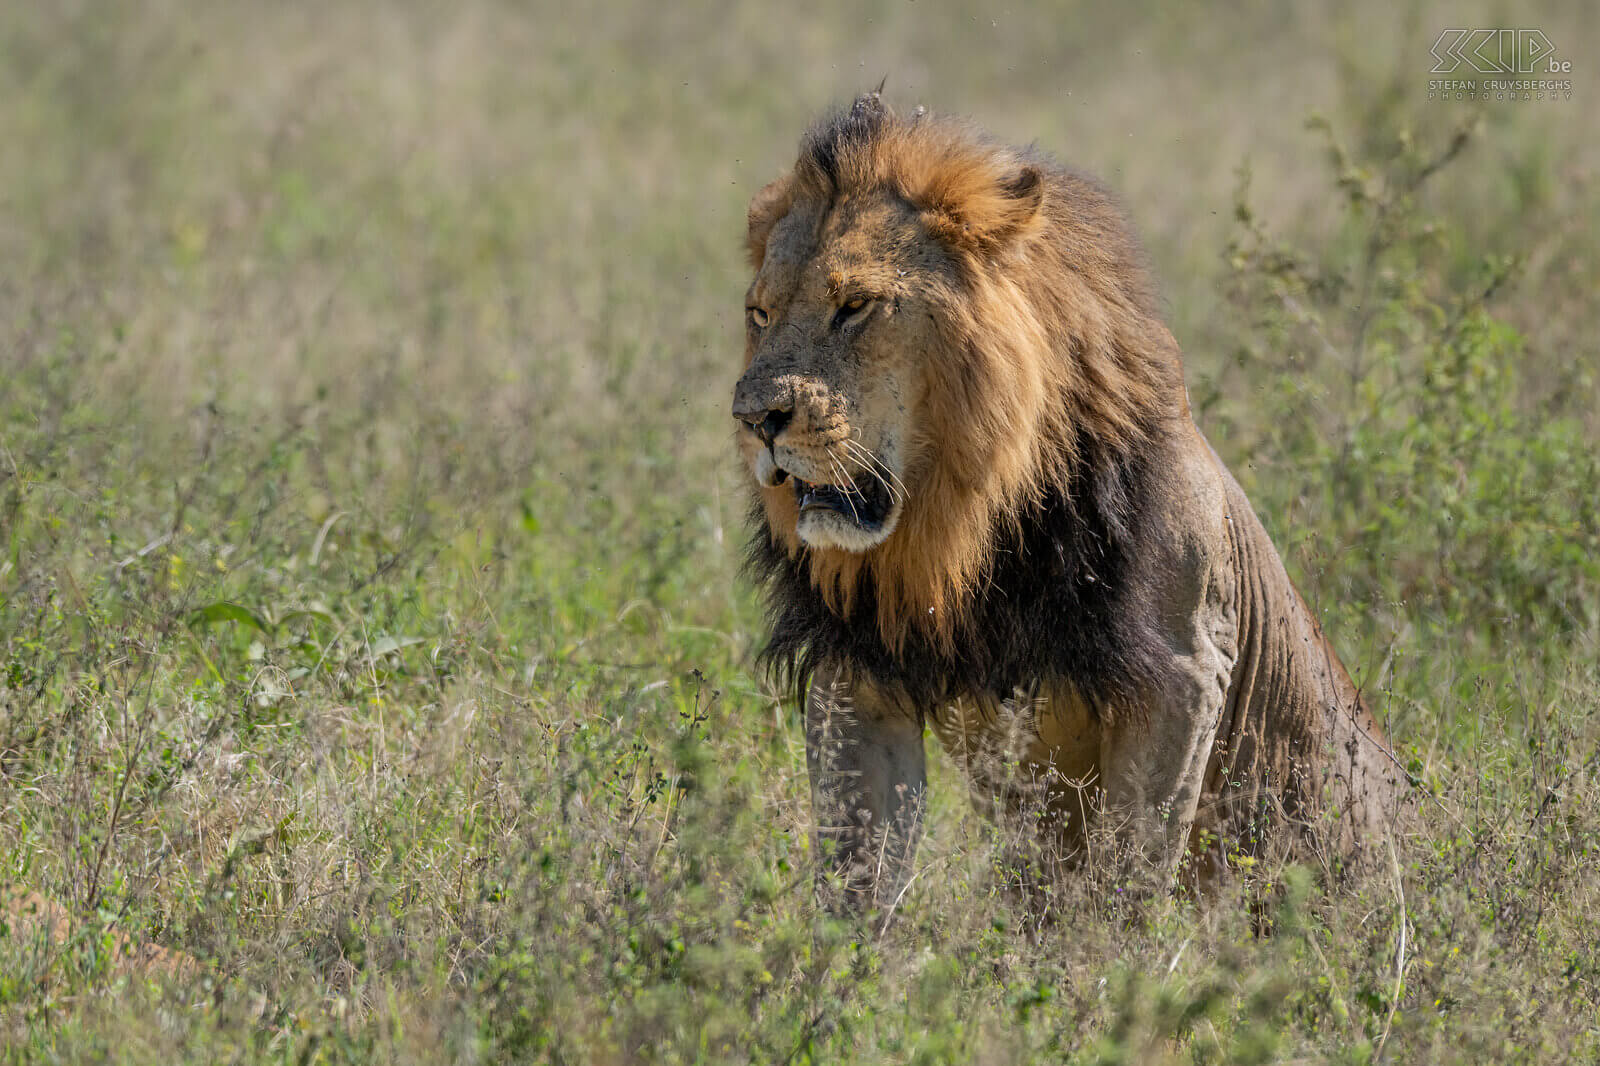 Nakuru NP - Leeuw In Nakuru NP konden we 's morgens een koppel leeuwen spotten. Tien minuten zaten ze goed zichtbaar in het hoge gras, nadien verplaatsten ze zich en gingen liggen in nog hoger gras waardoor ze amper te zien waren. Altijd indrukwekkend om deze machtige katten in het wild te zien. Stefan Cruysberghs